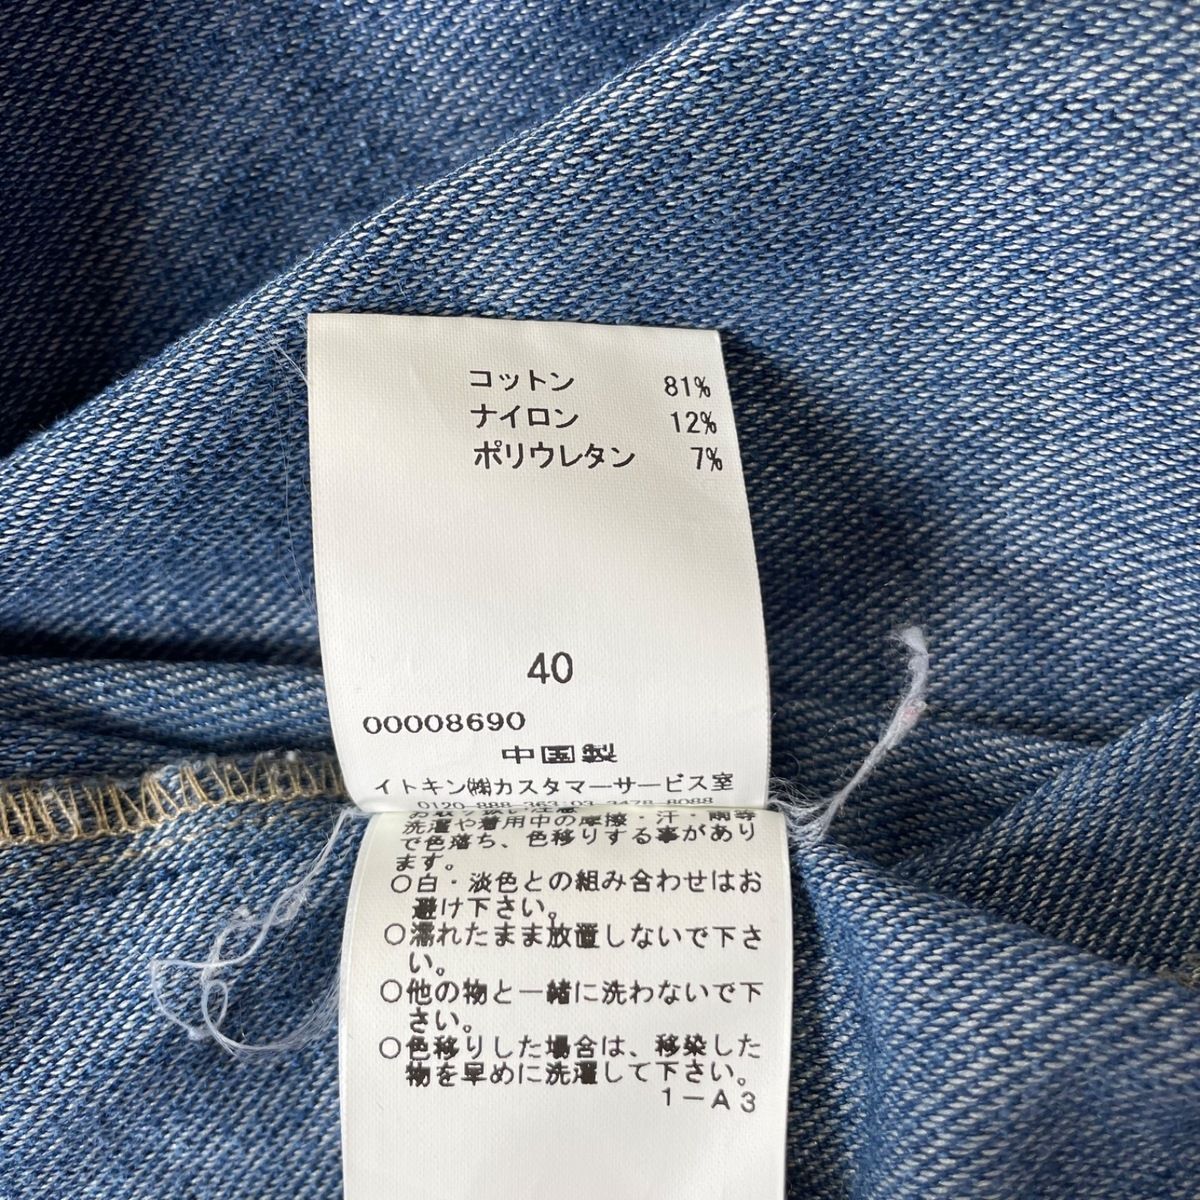 JOCOMOMOLA(ホコモモラ) ワンピース サイズ40 XL レディース - ブルー 長袖/ひざ丈/デニム